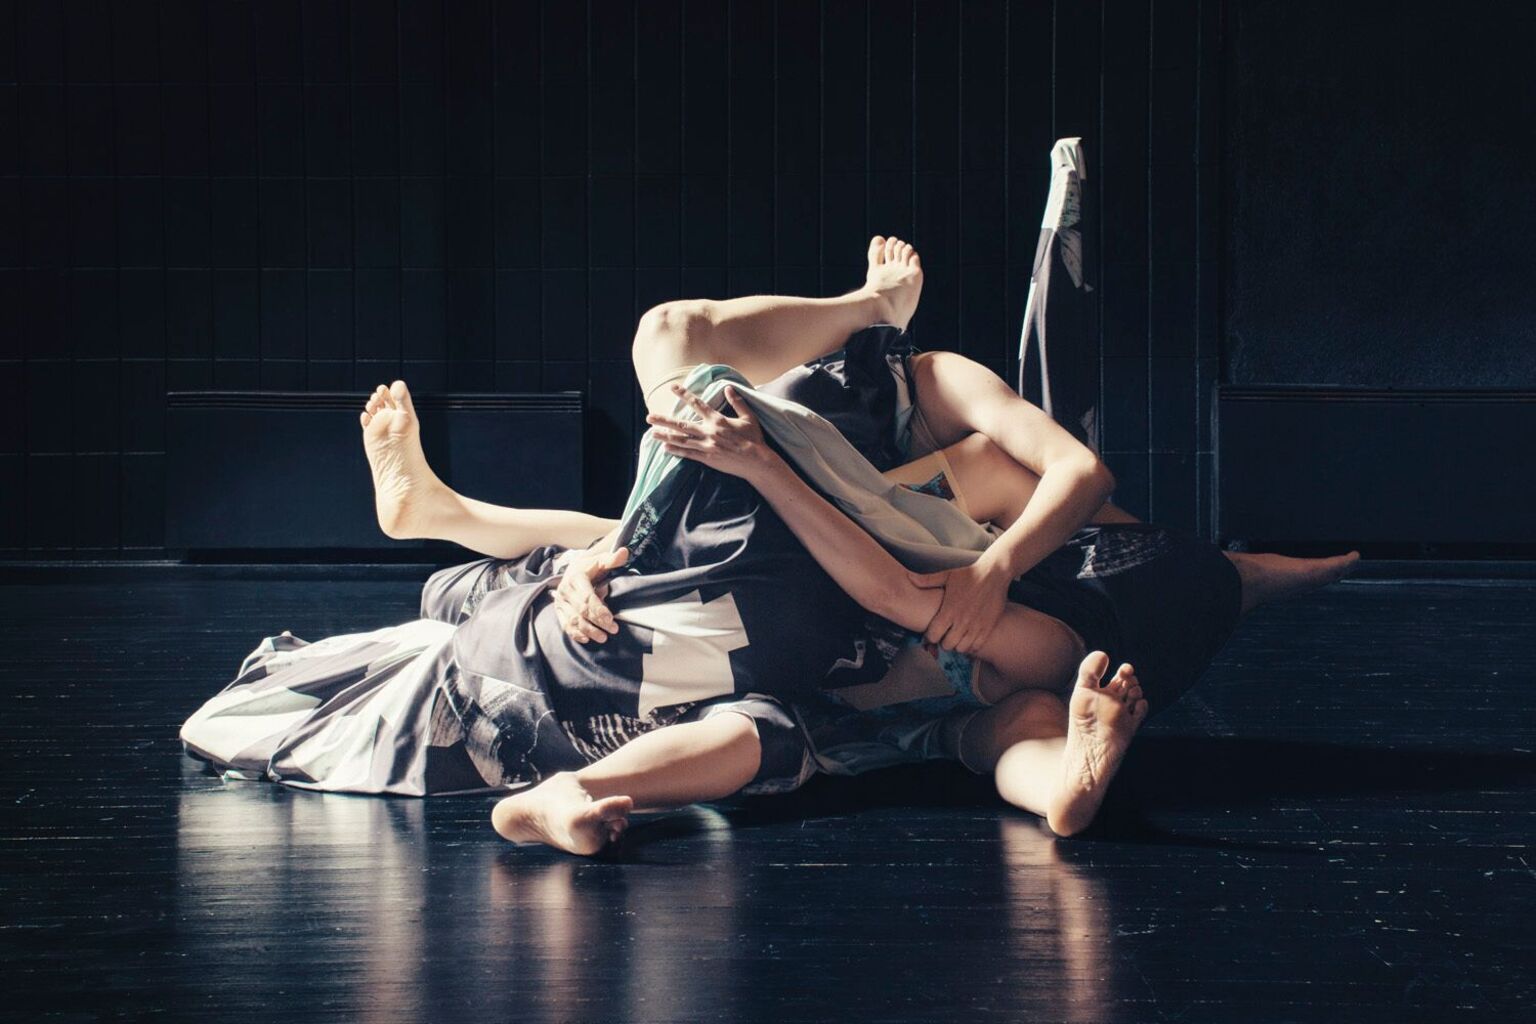 Bilde: Frå State (2016), danseperformance som er ein del av  stipendiatprosjektet Affective Choreographies til Ingri Fiksdal. Meir info: www.ingridfiksdal.com
Foto: Anders Lindén